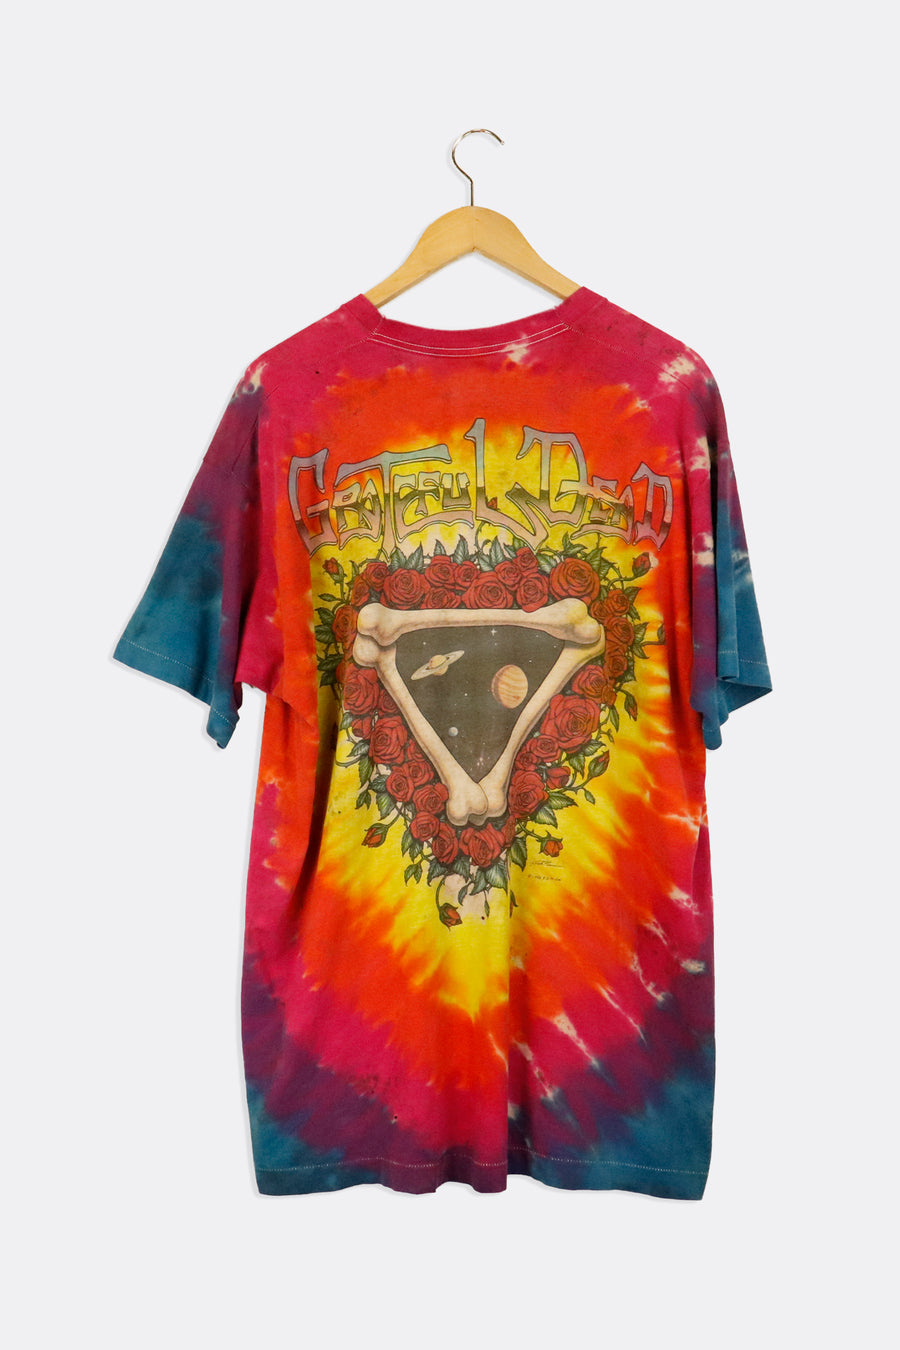 Vintage 1992 Grateful Dead Space Your Face Tie Dye Graphic T Shirt Sz XL